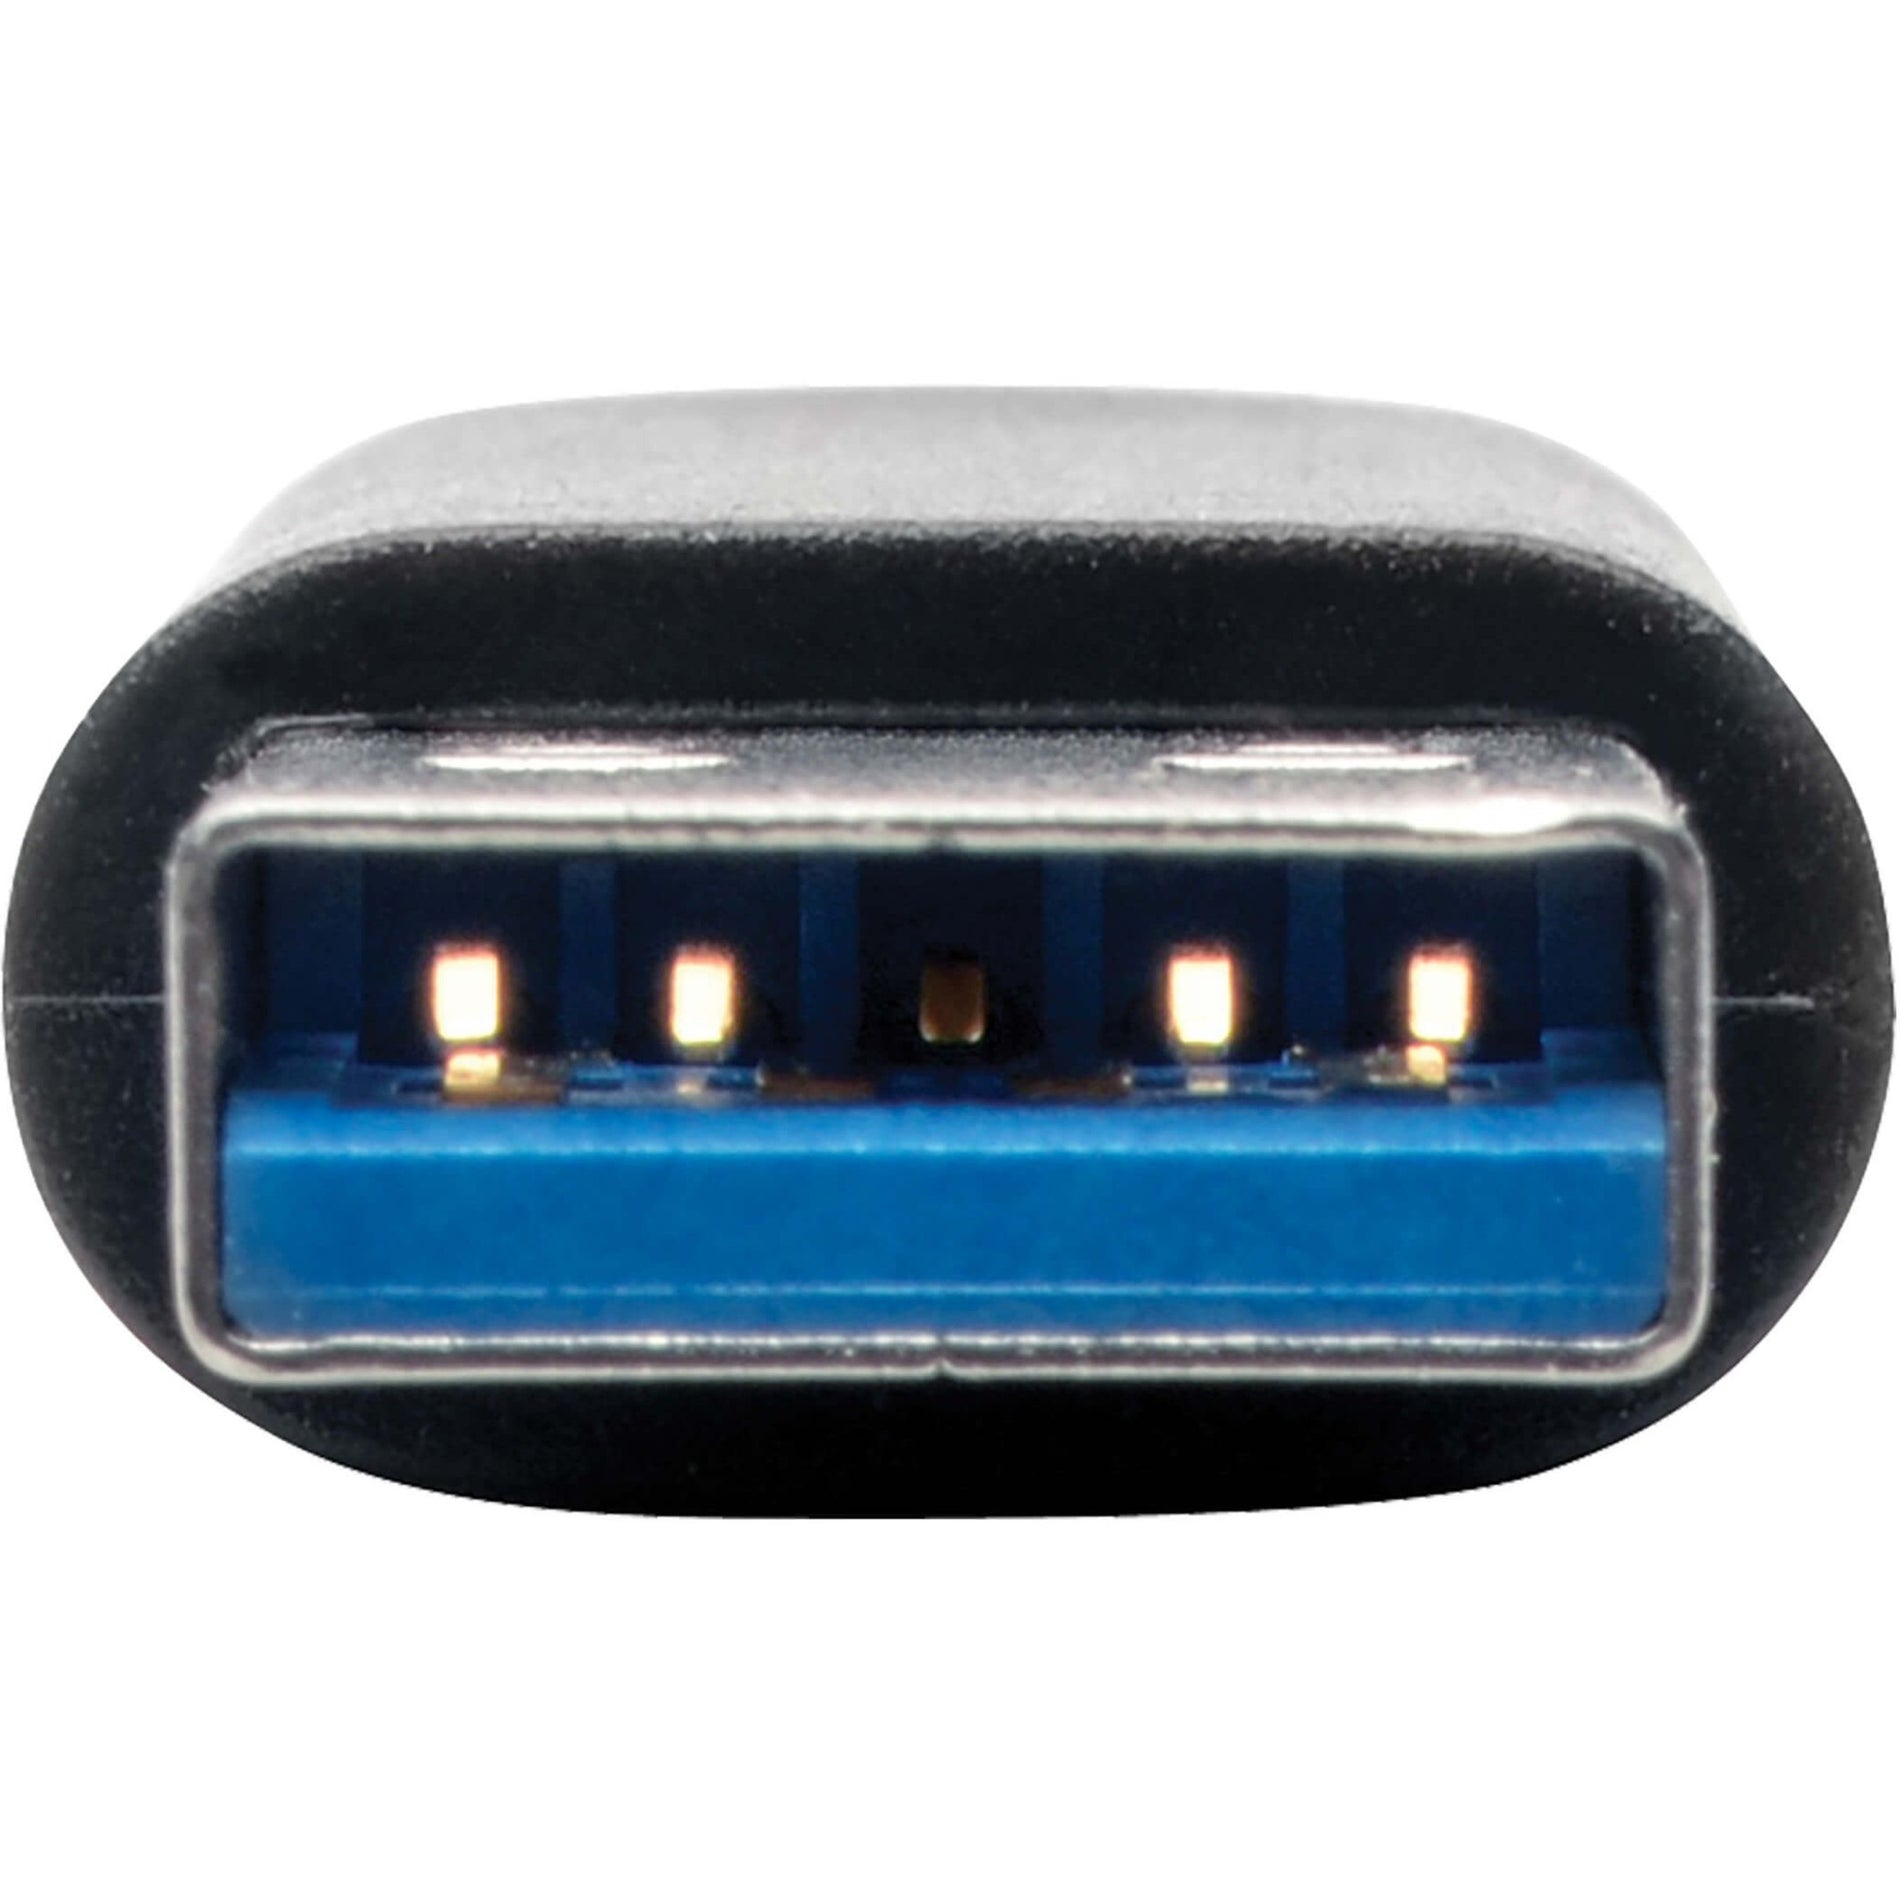 Tripp Lite U329-000-10G USB-C to USB-A Adapter (F/M) USB 3.2 Gen 2 (10 Gbps) Black  Tripp Lite U329-000-10G Adattatore USB-C a USB-A (F/M) USB 3.2 Gen 2 (10 Gbps) Nero